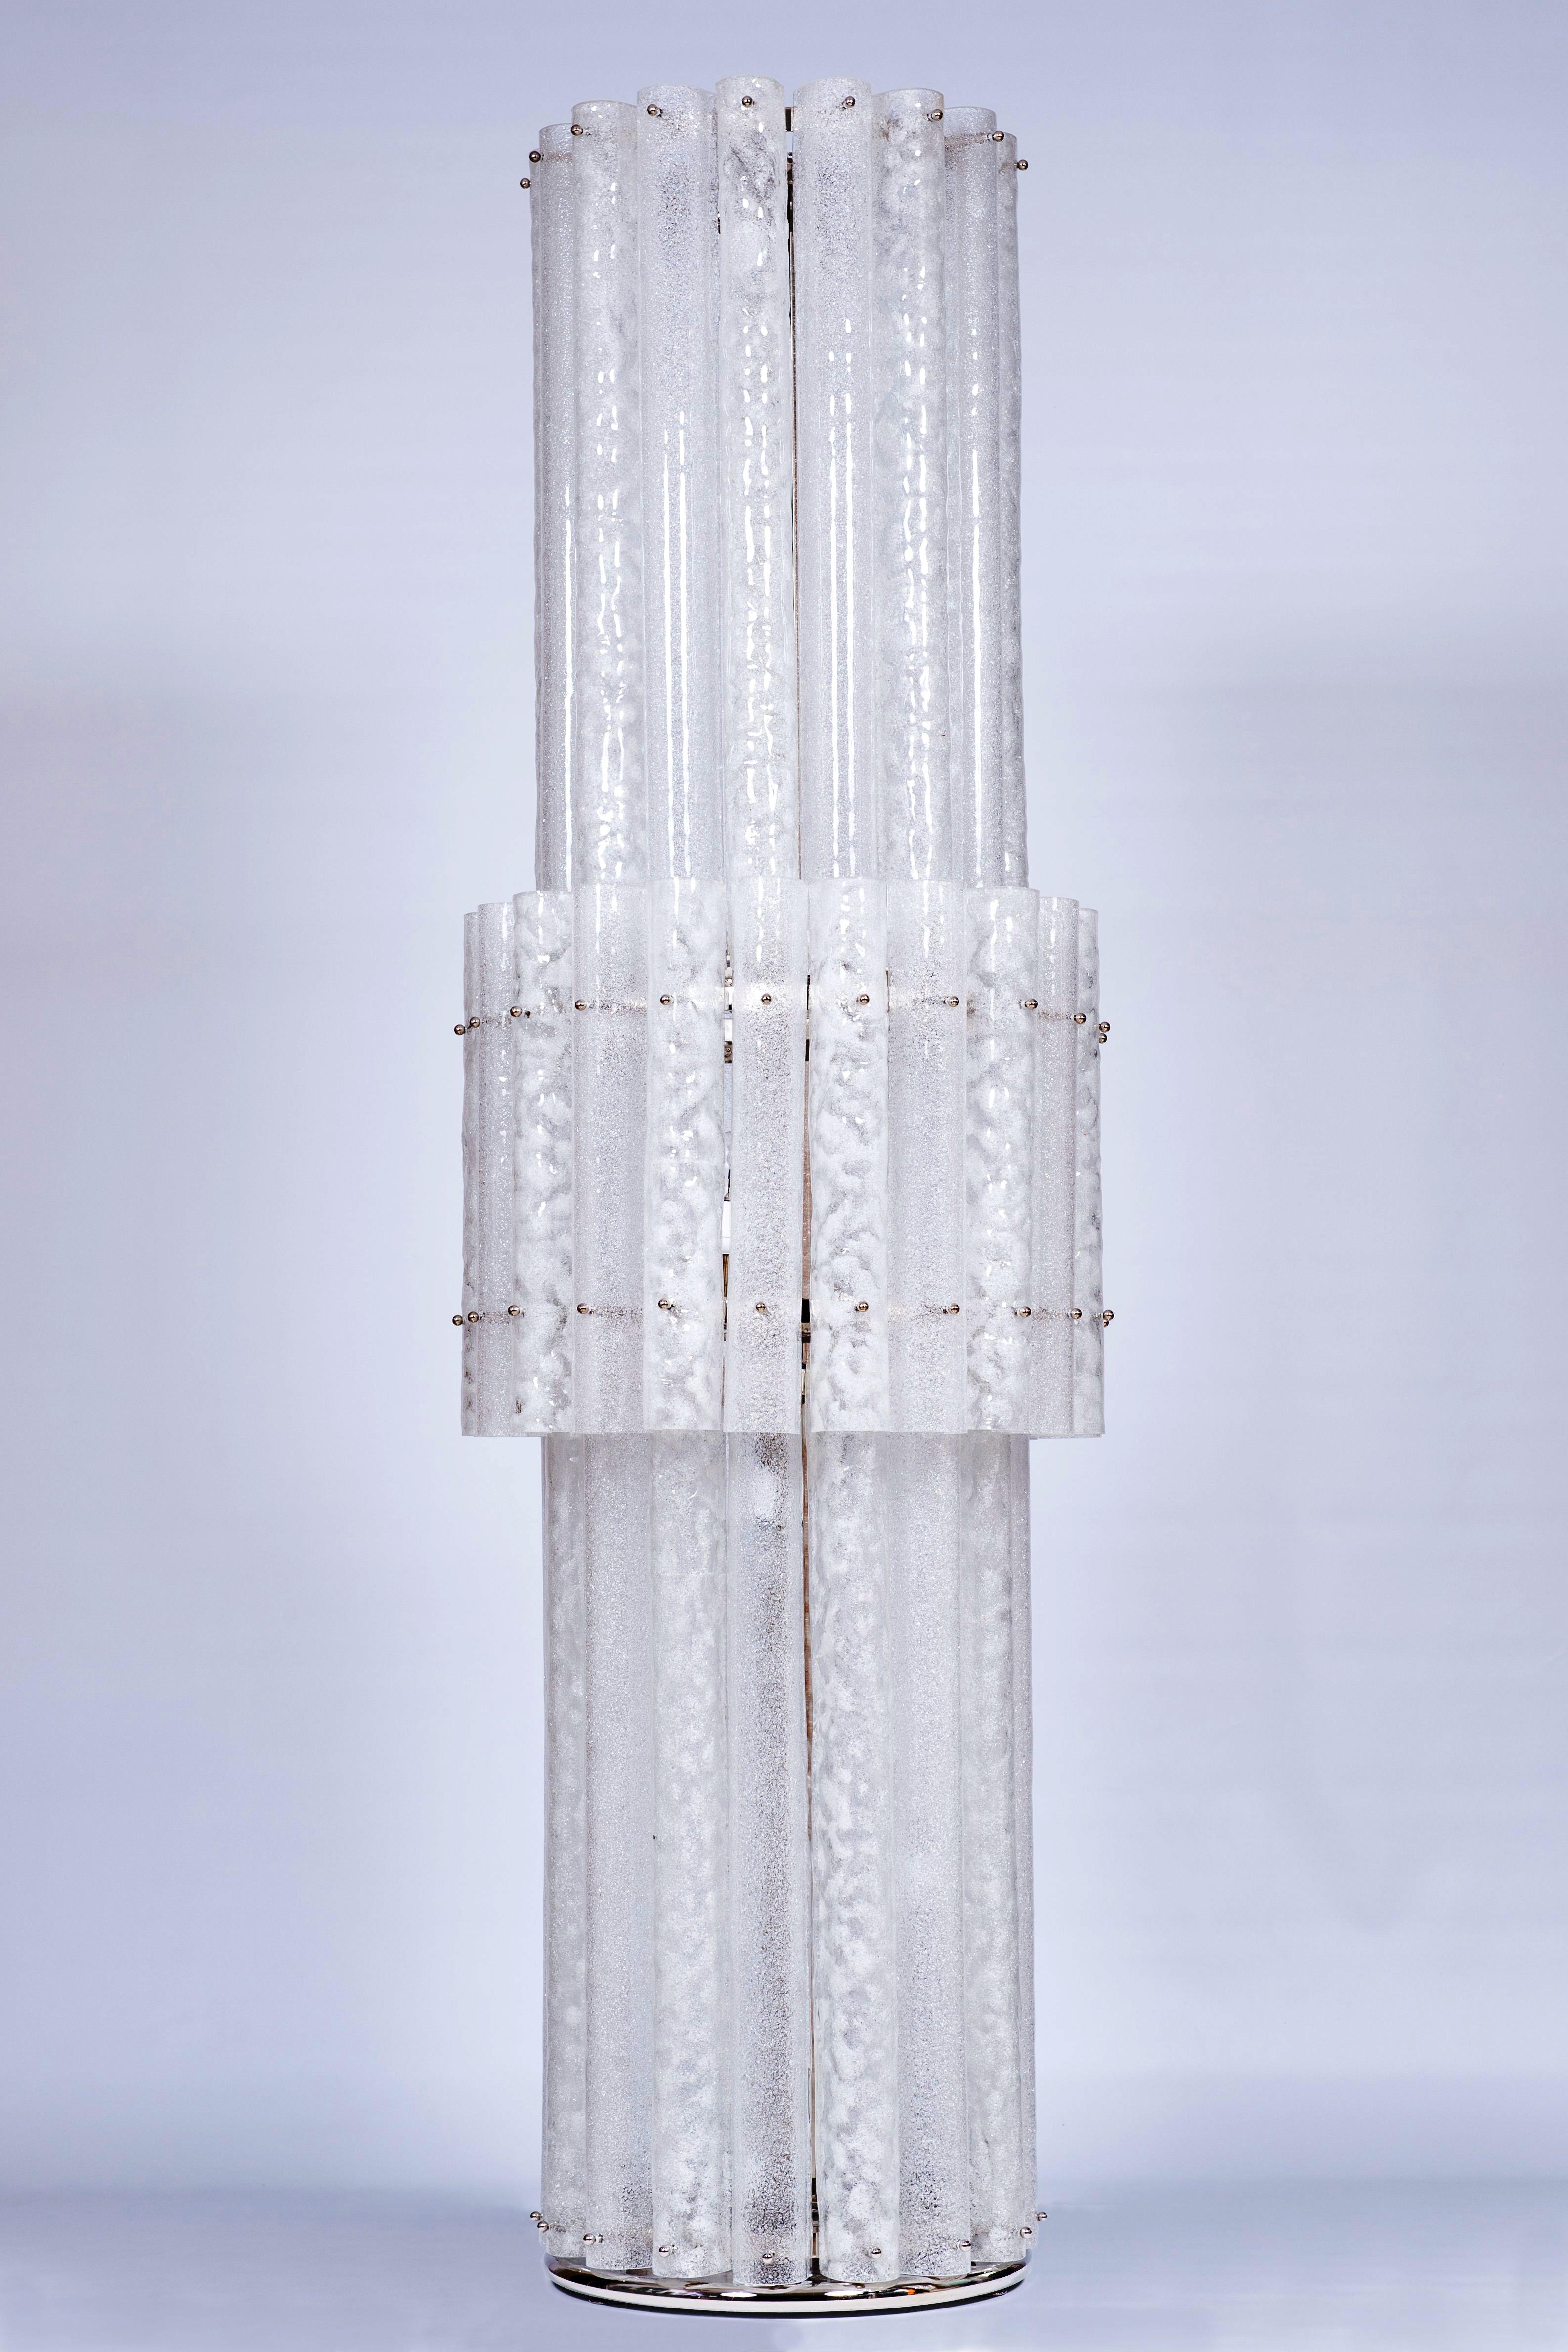 Grandiose lampadaire monumental en verre de Murano aux couleurs variées et à la texture granuleuse Italie, contemporain, 21e siècle.
Ce lampadaire monumental est un chef-d'œuvre époustouflant, entièrement fabriqué à la main en verre soufflé de